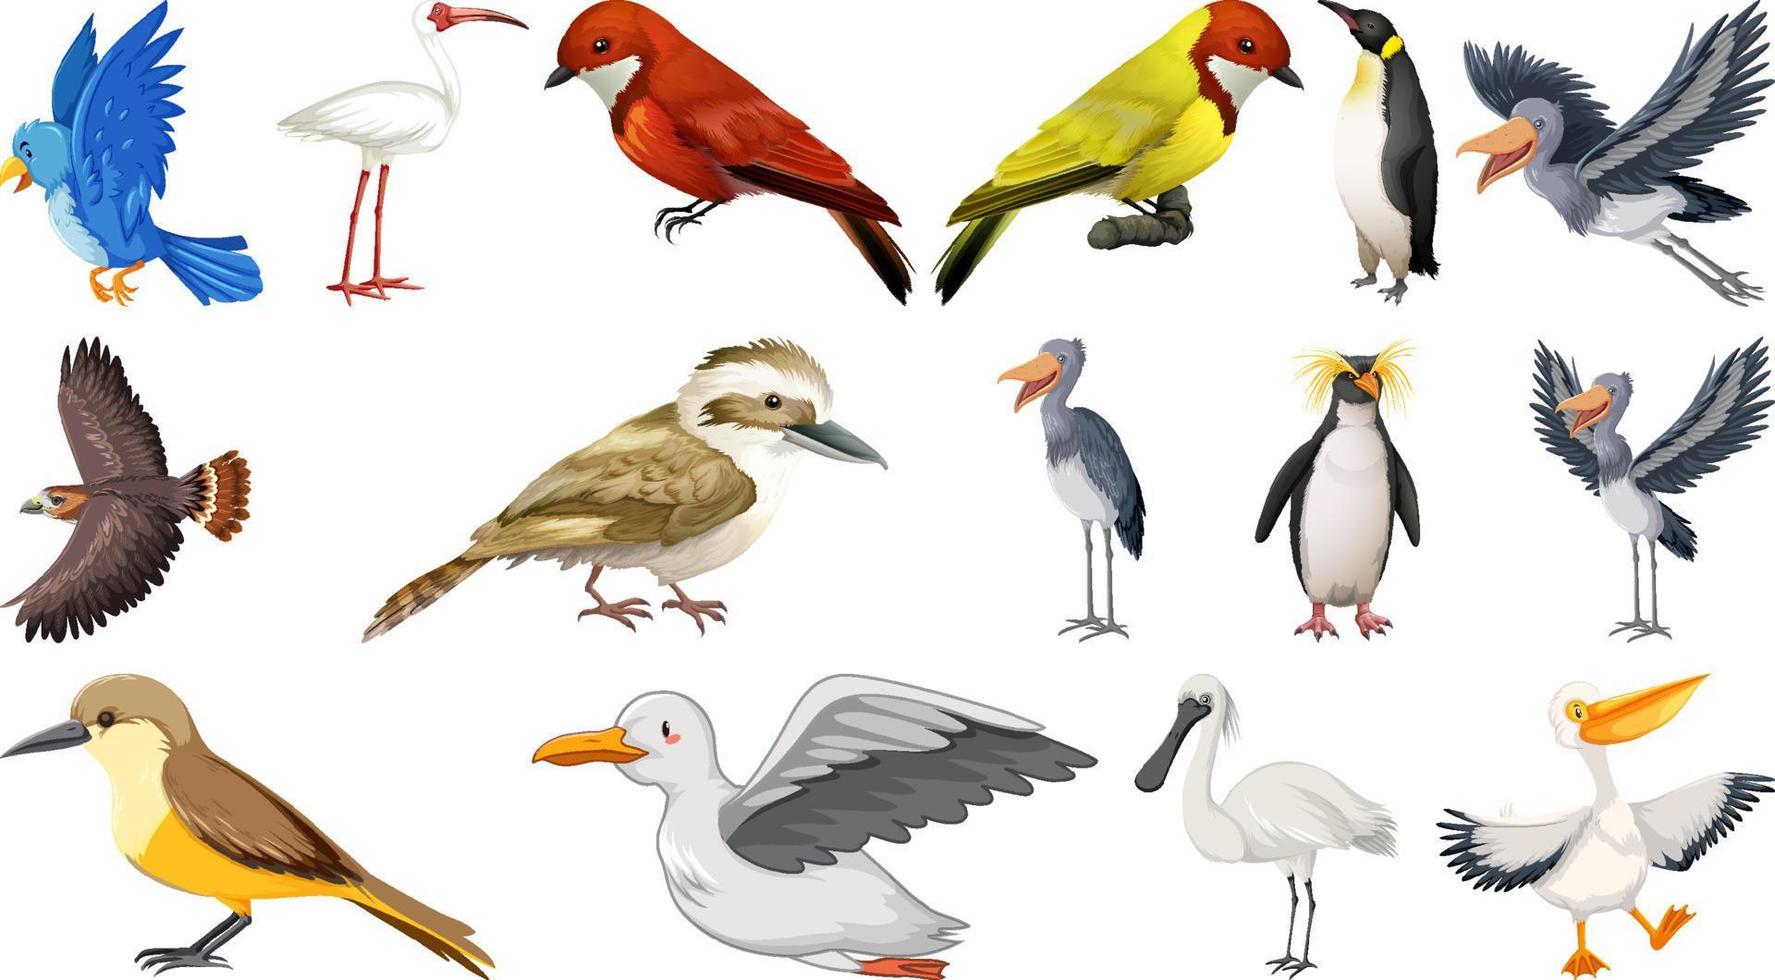 diferentes tipos de coleção de pássaros vetor